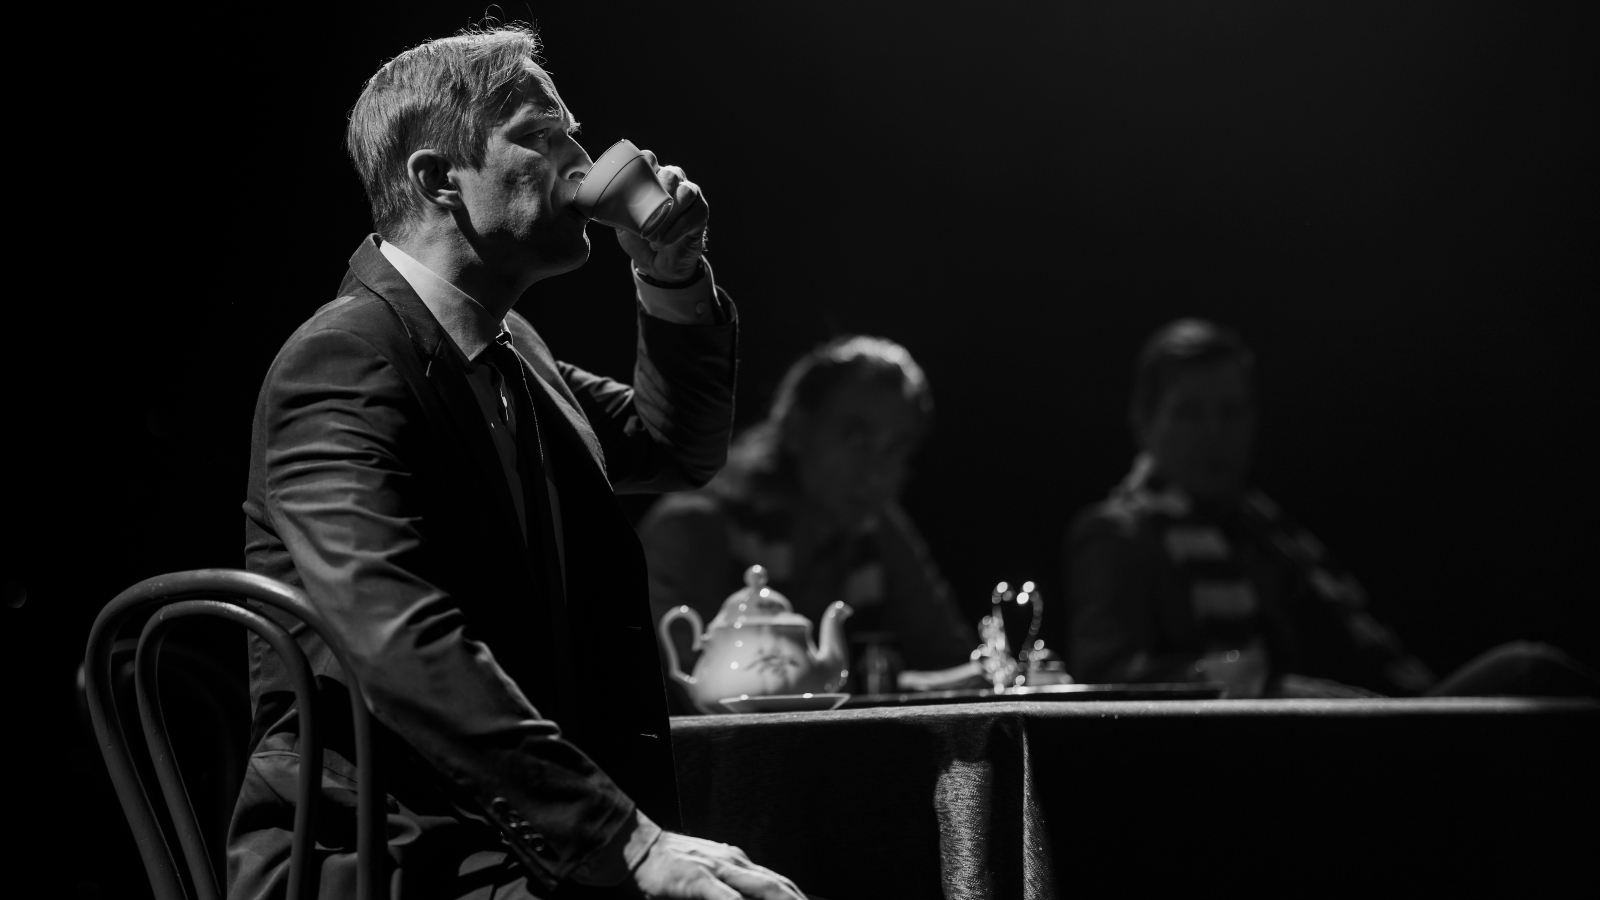 Kuvassa on Mikko Pörhölä juomassa teetä kahvilapöydän ääressä.  Kuva on musta-valkoinen.